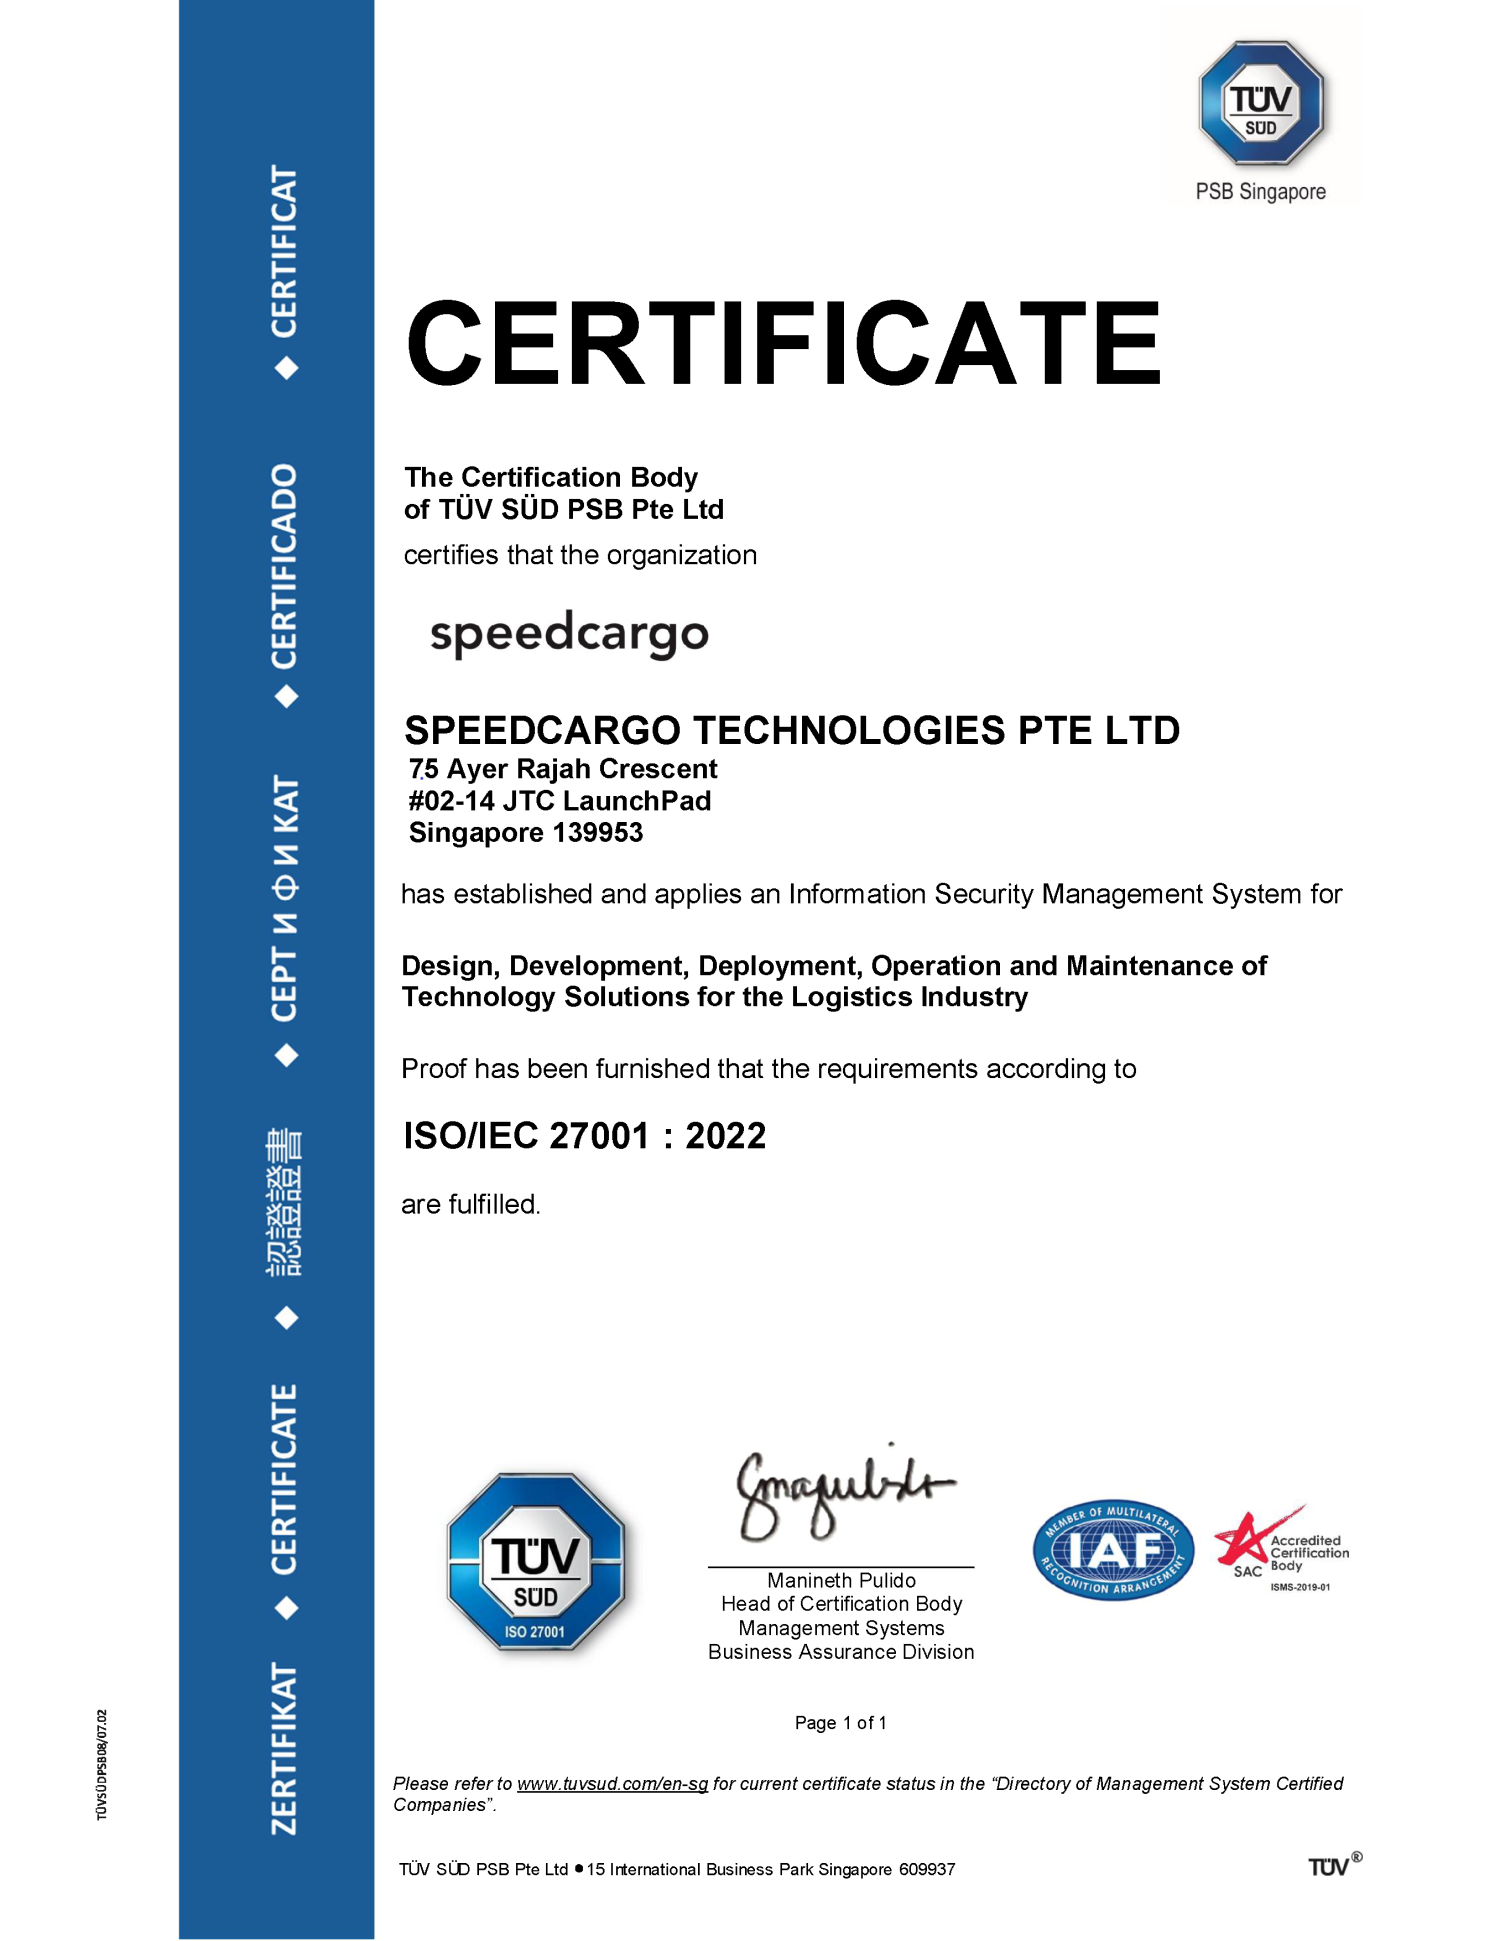 ISO 27001 Certification for Speedcargo Technologies